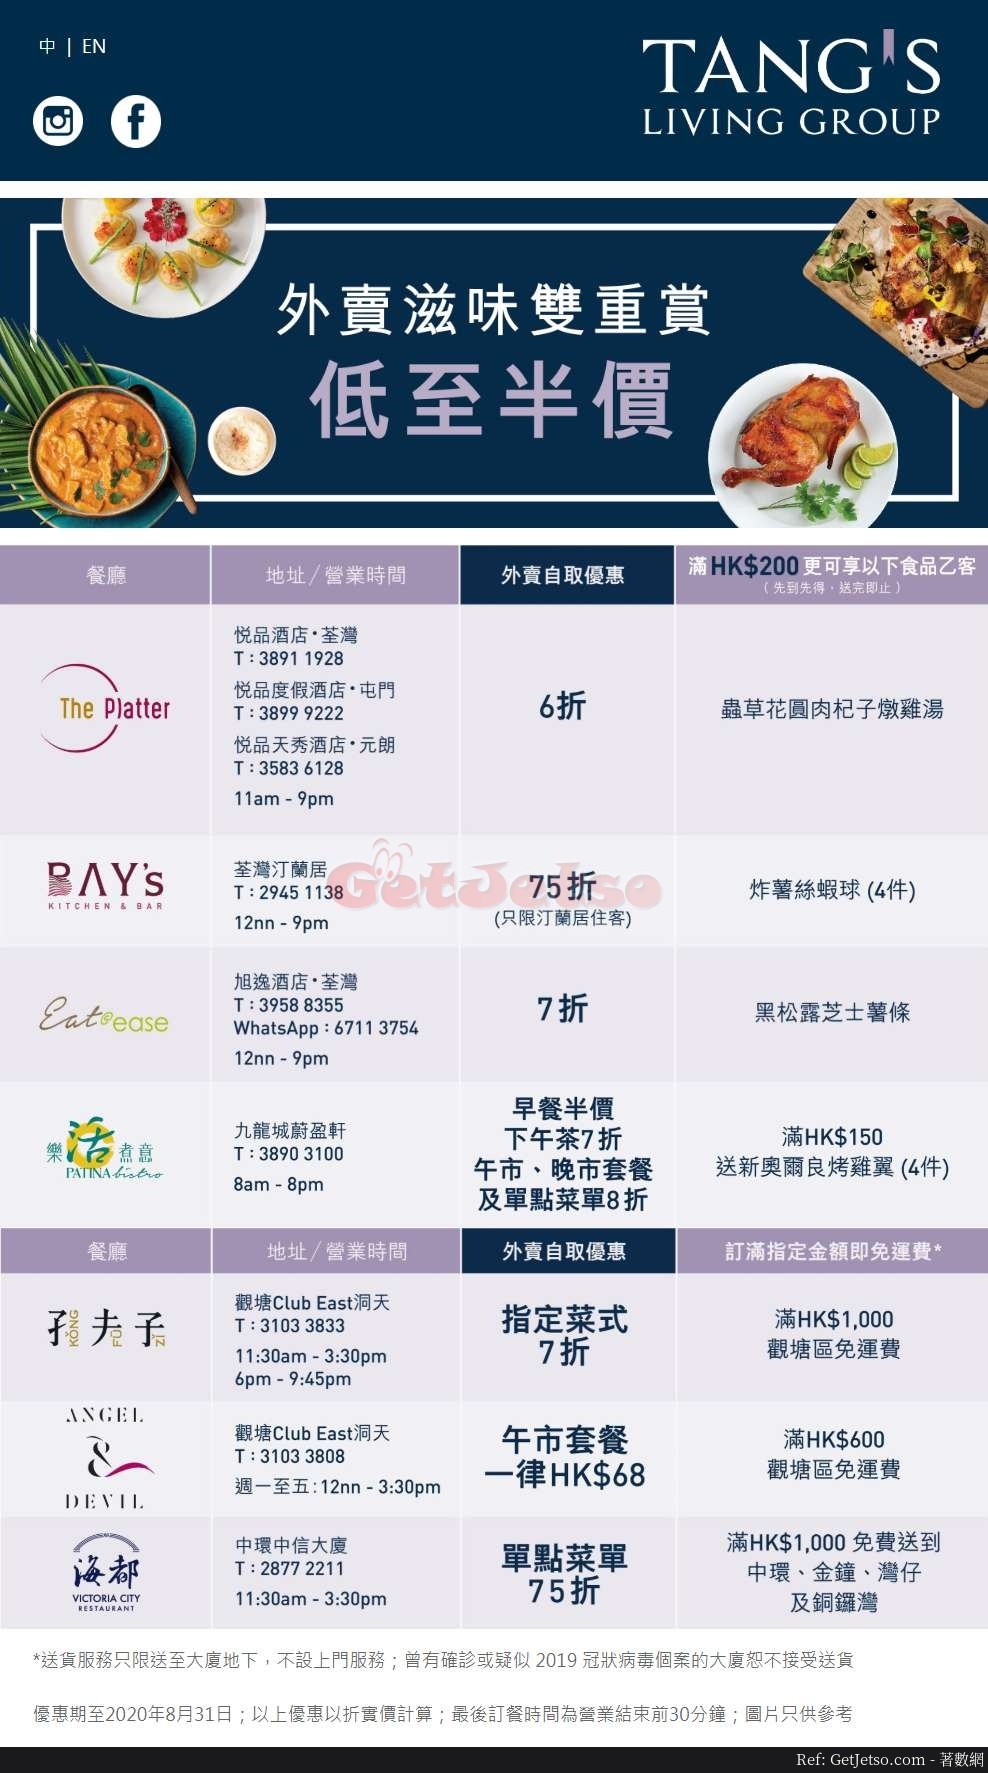 Tang’s Living Group 旗下餐廳外賣自取低至5折優惠(至20年8月31日)圖片1